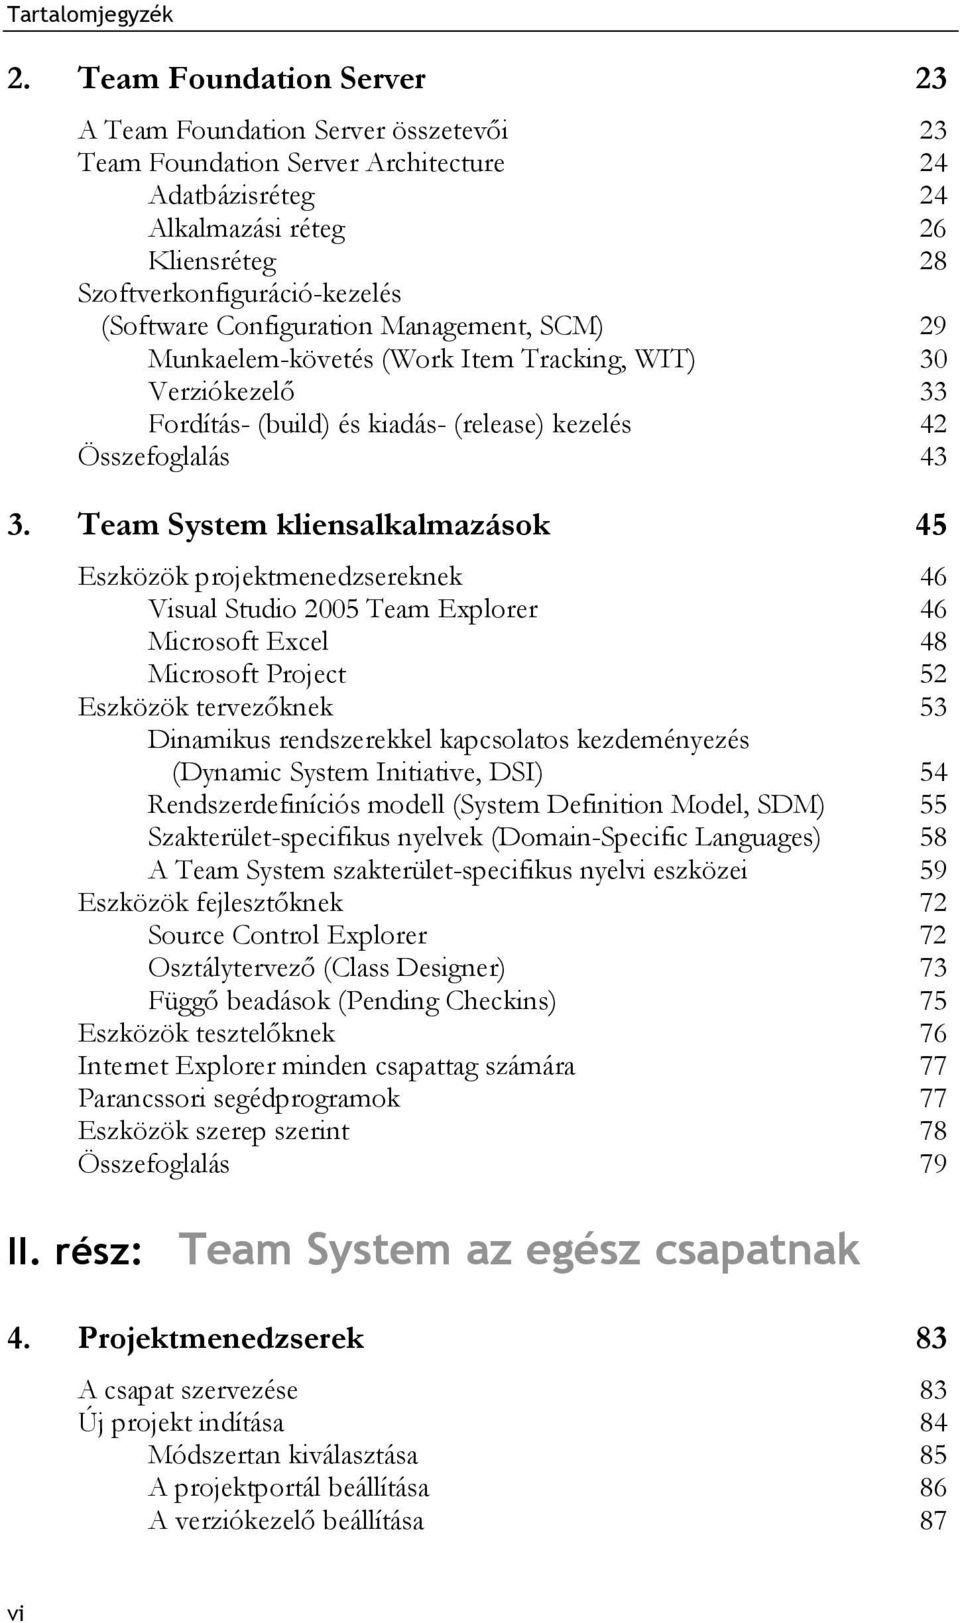 Team System kliensalkalmazások 45 Eszközök projektmenedzsereknek 46 Visual Studio 2005 Team Explorer 46 Microsoft Excel 48 Microsoft Project 52 Eszközök tervezőknek 53 Dinamikus rendszerekkel